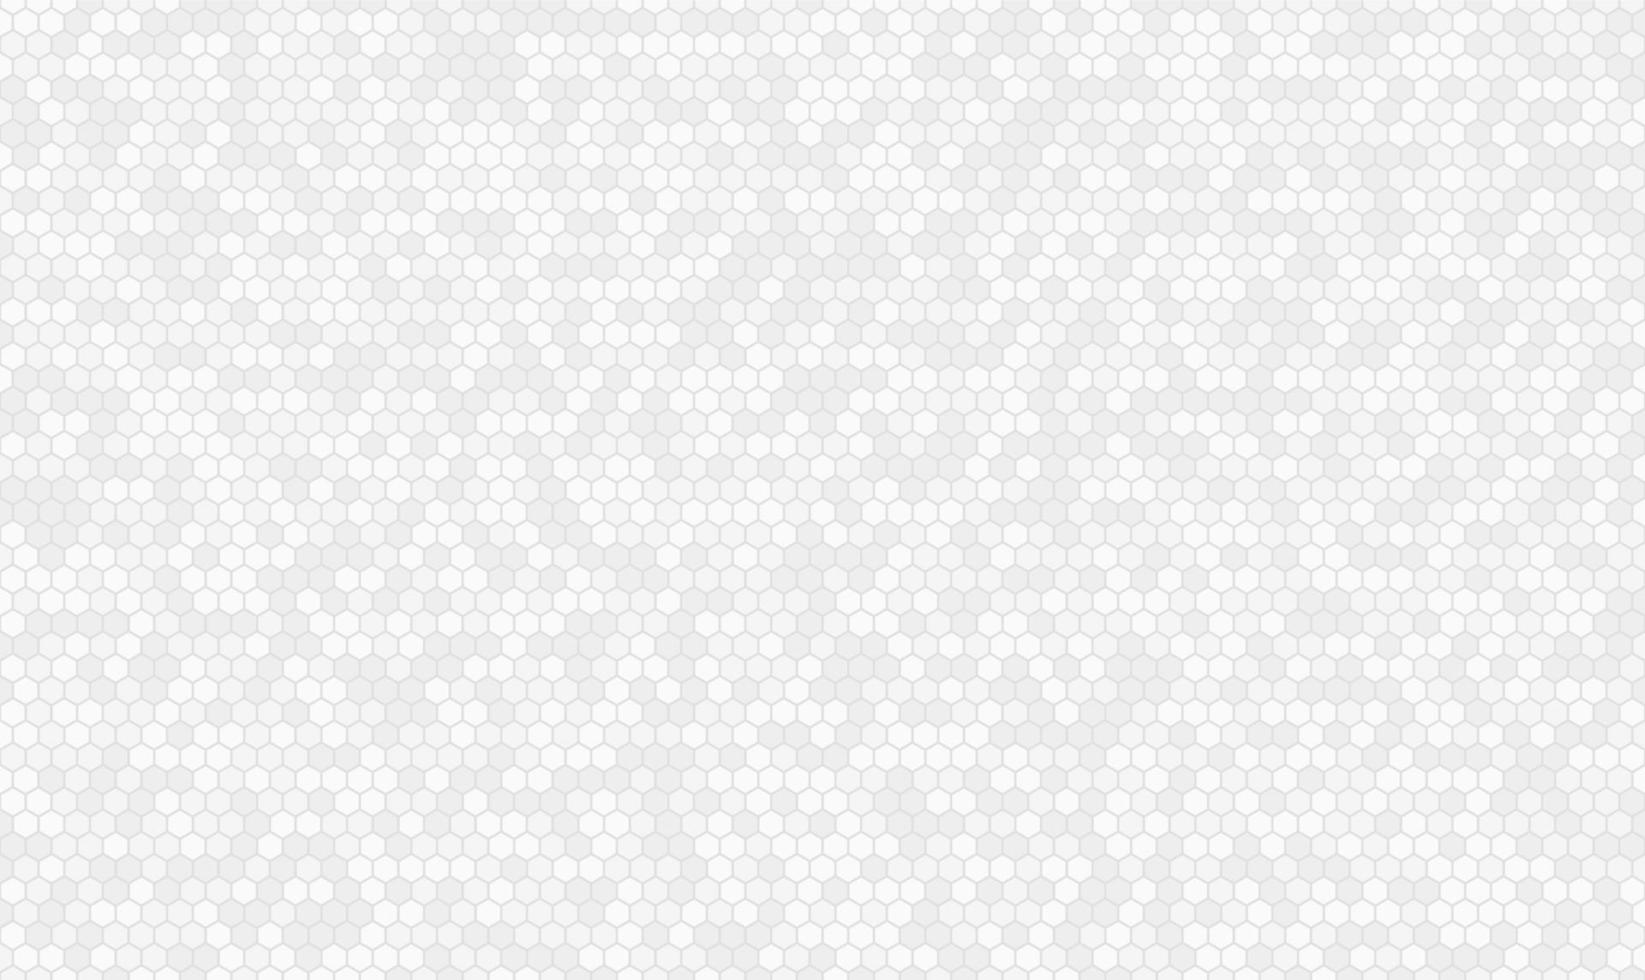 forma de hexágono pequeño con fondo transparente de color blanco y gris claro. vector